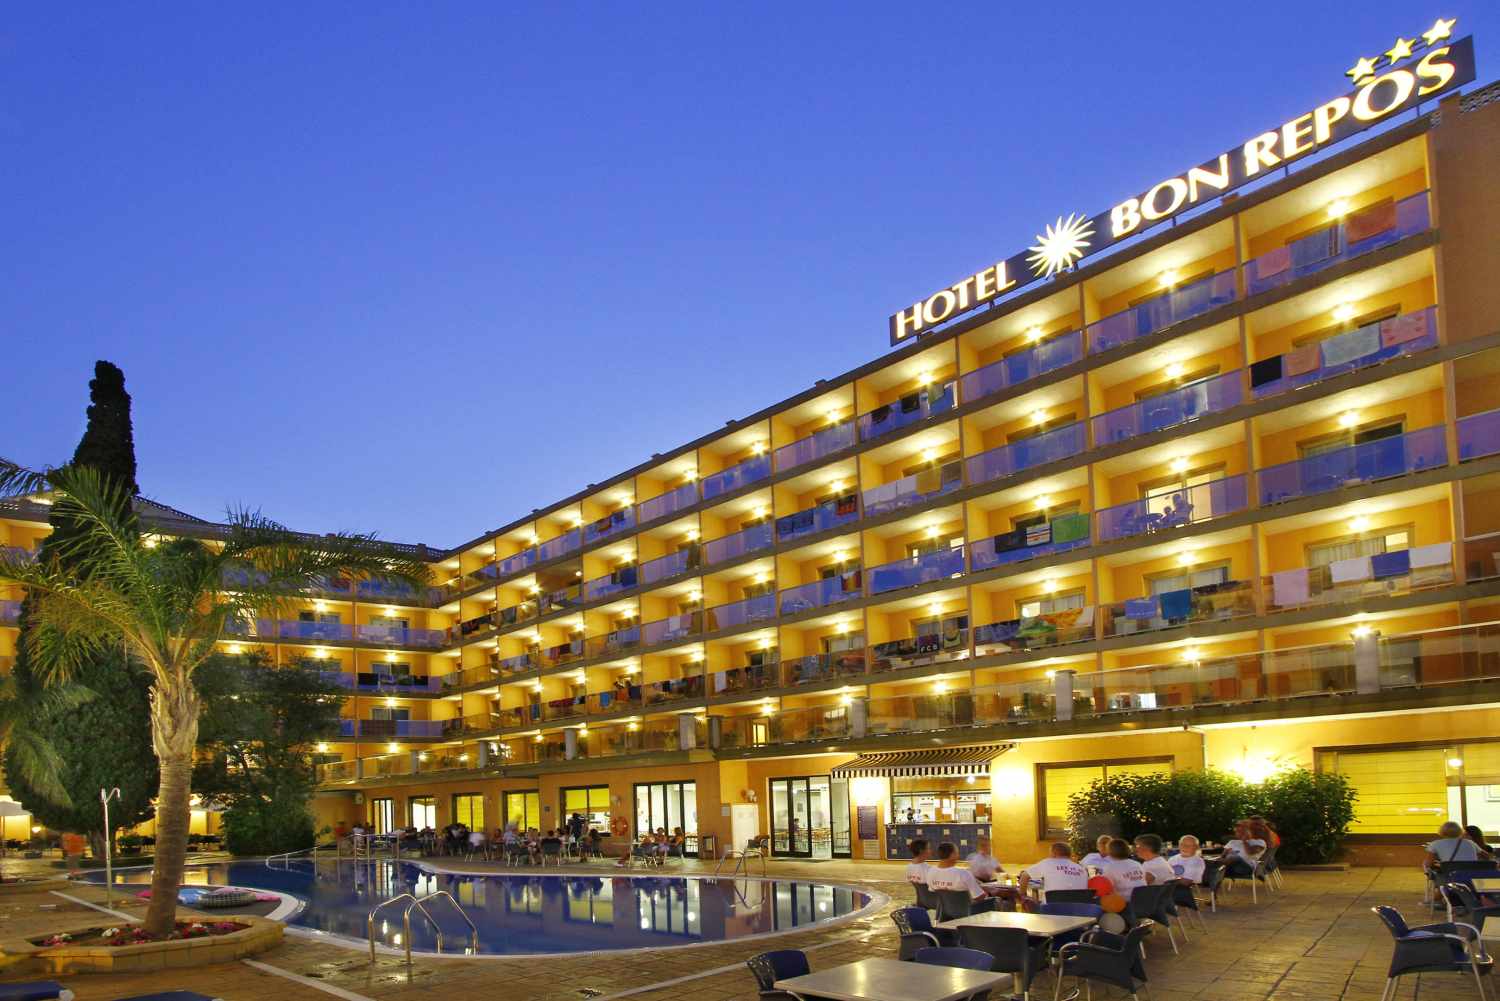 Hotel Bon Repos, Calella, Costa Brava, Spanje